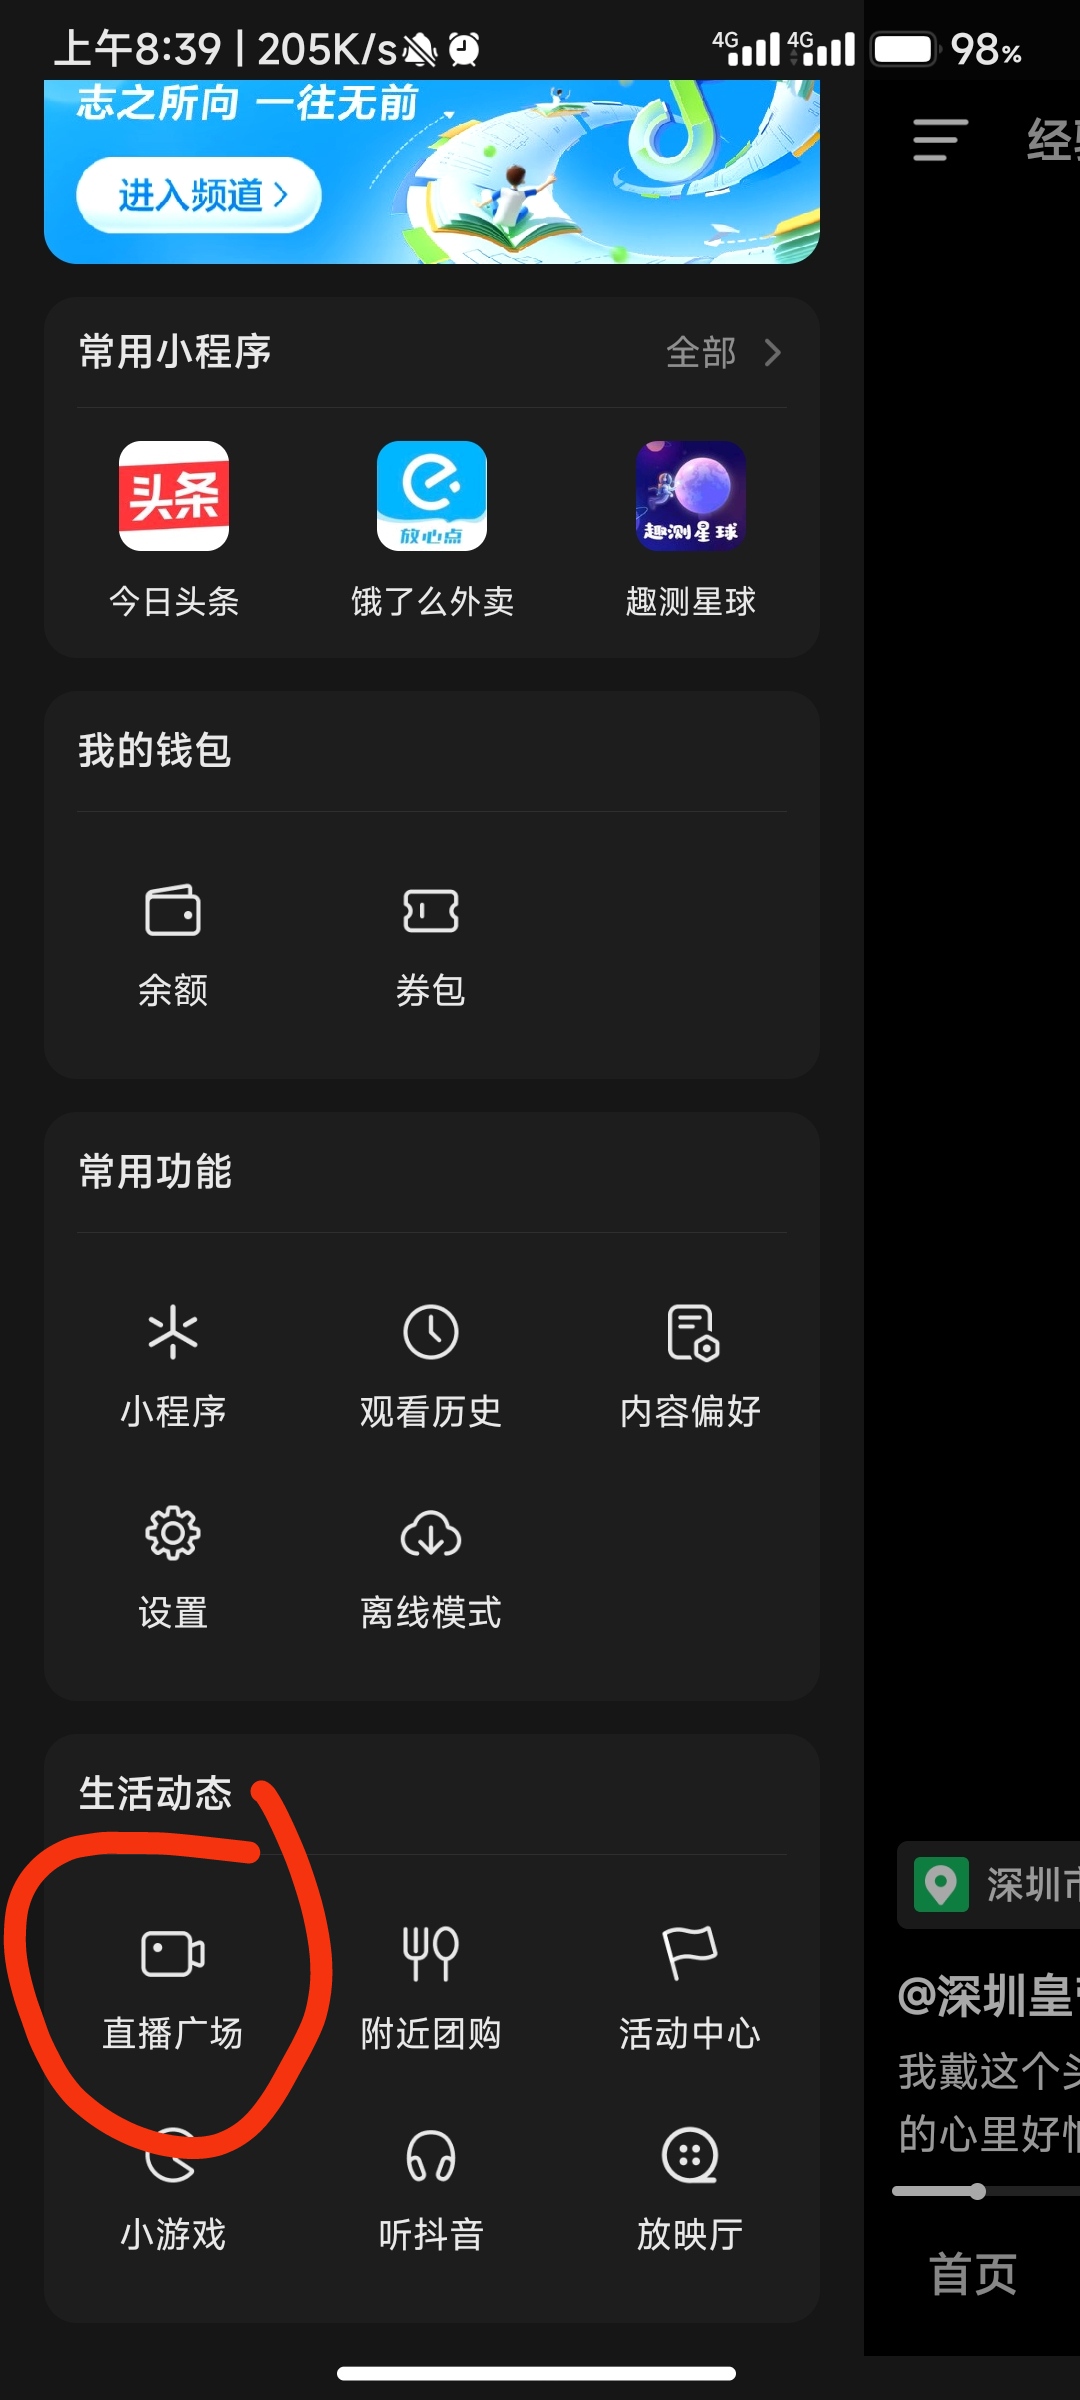 【实物专区】抖音App领取优惠券白嫖实物_网络实物线报